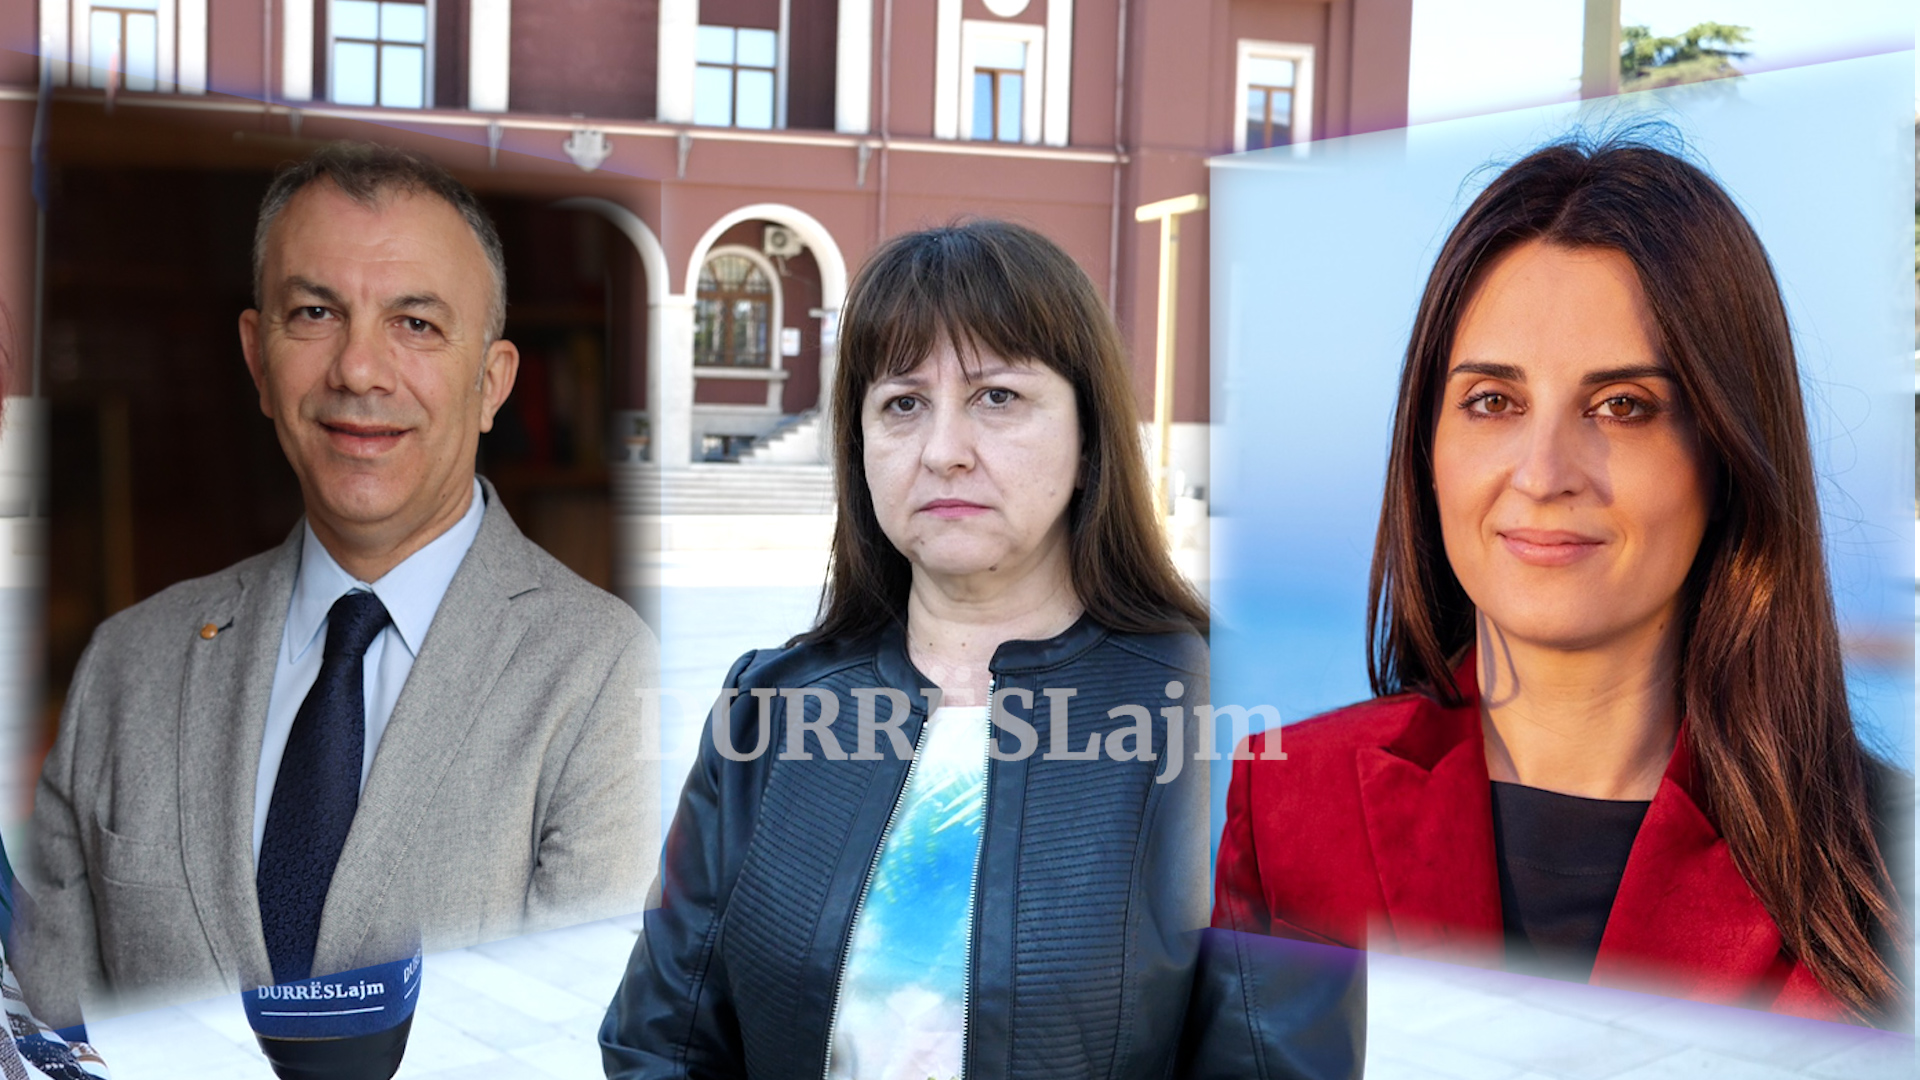 A do të ketë një përballje publike mes kandidatëve Sako dhe Cara në Durrës? (VIDEO)